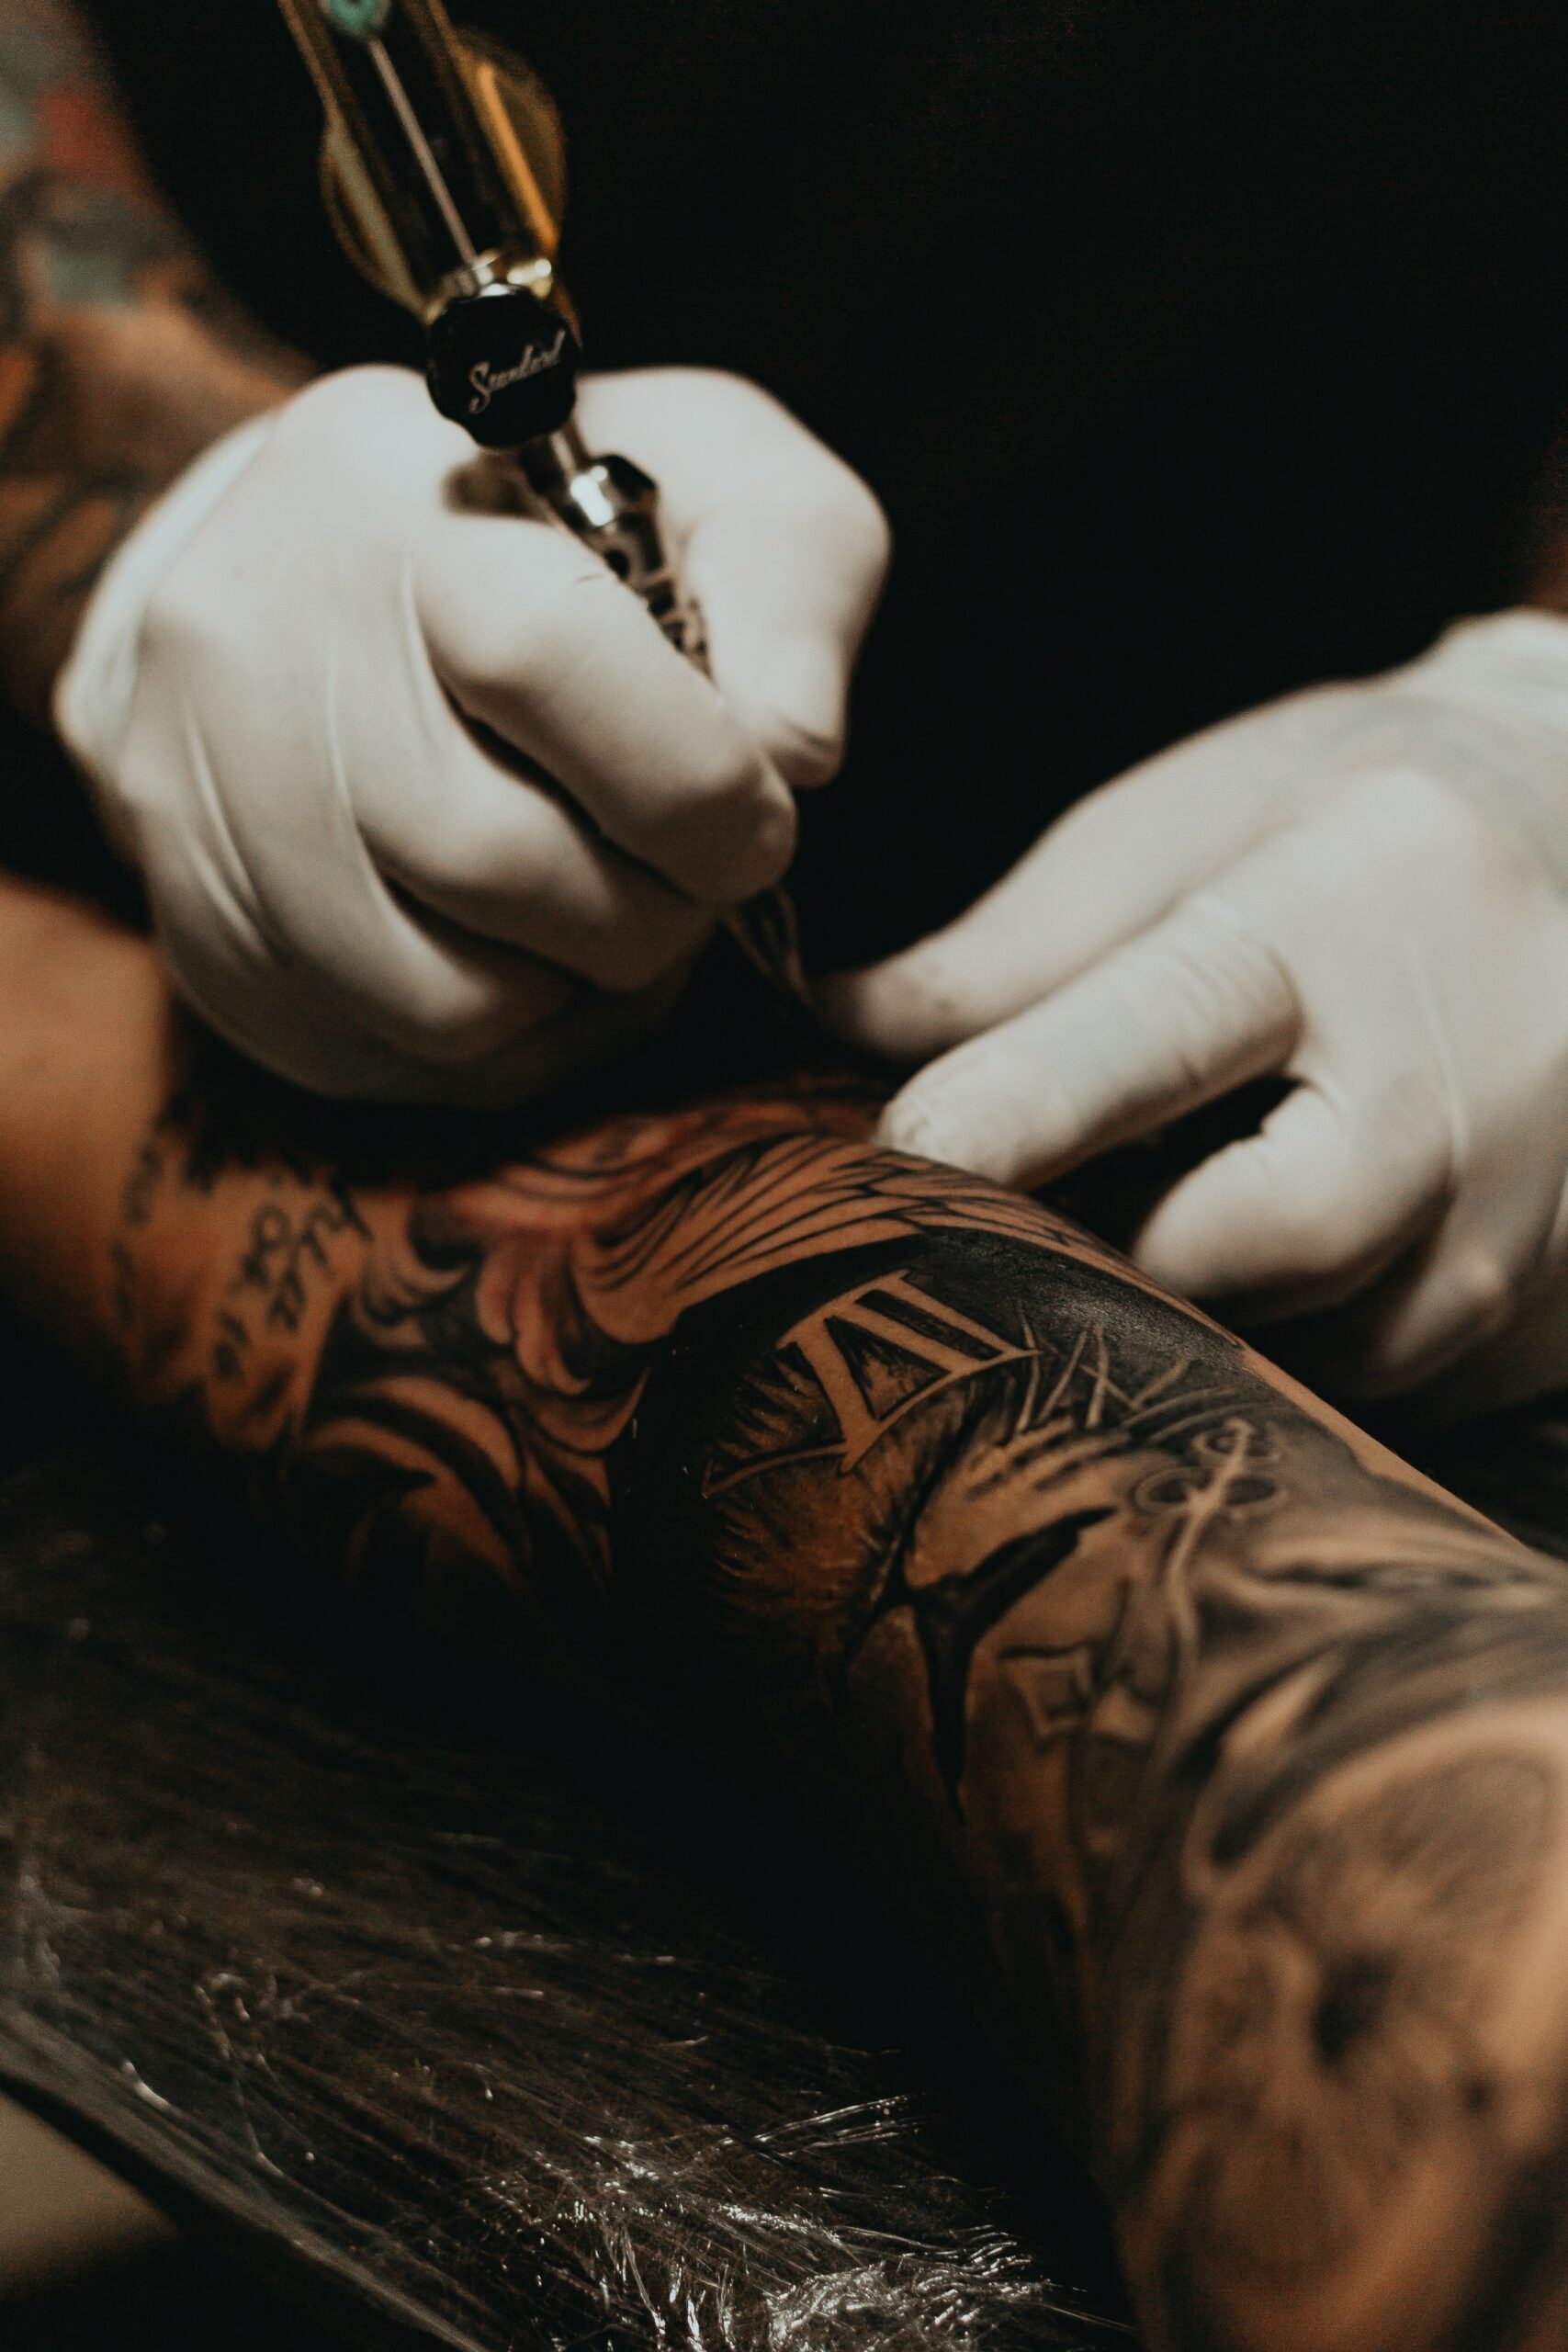 Haftung: Schadensersatz für misslungenes Tattoo?